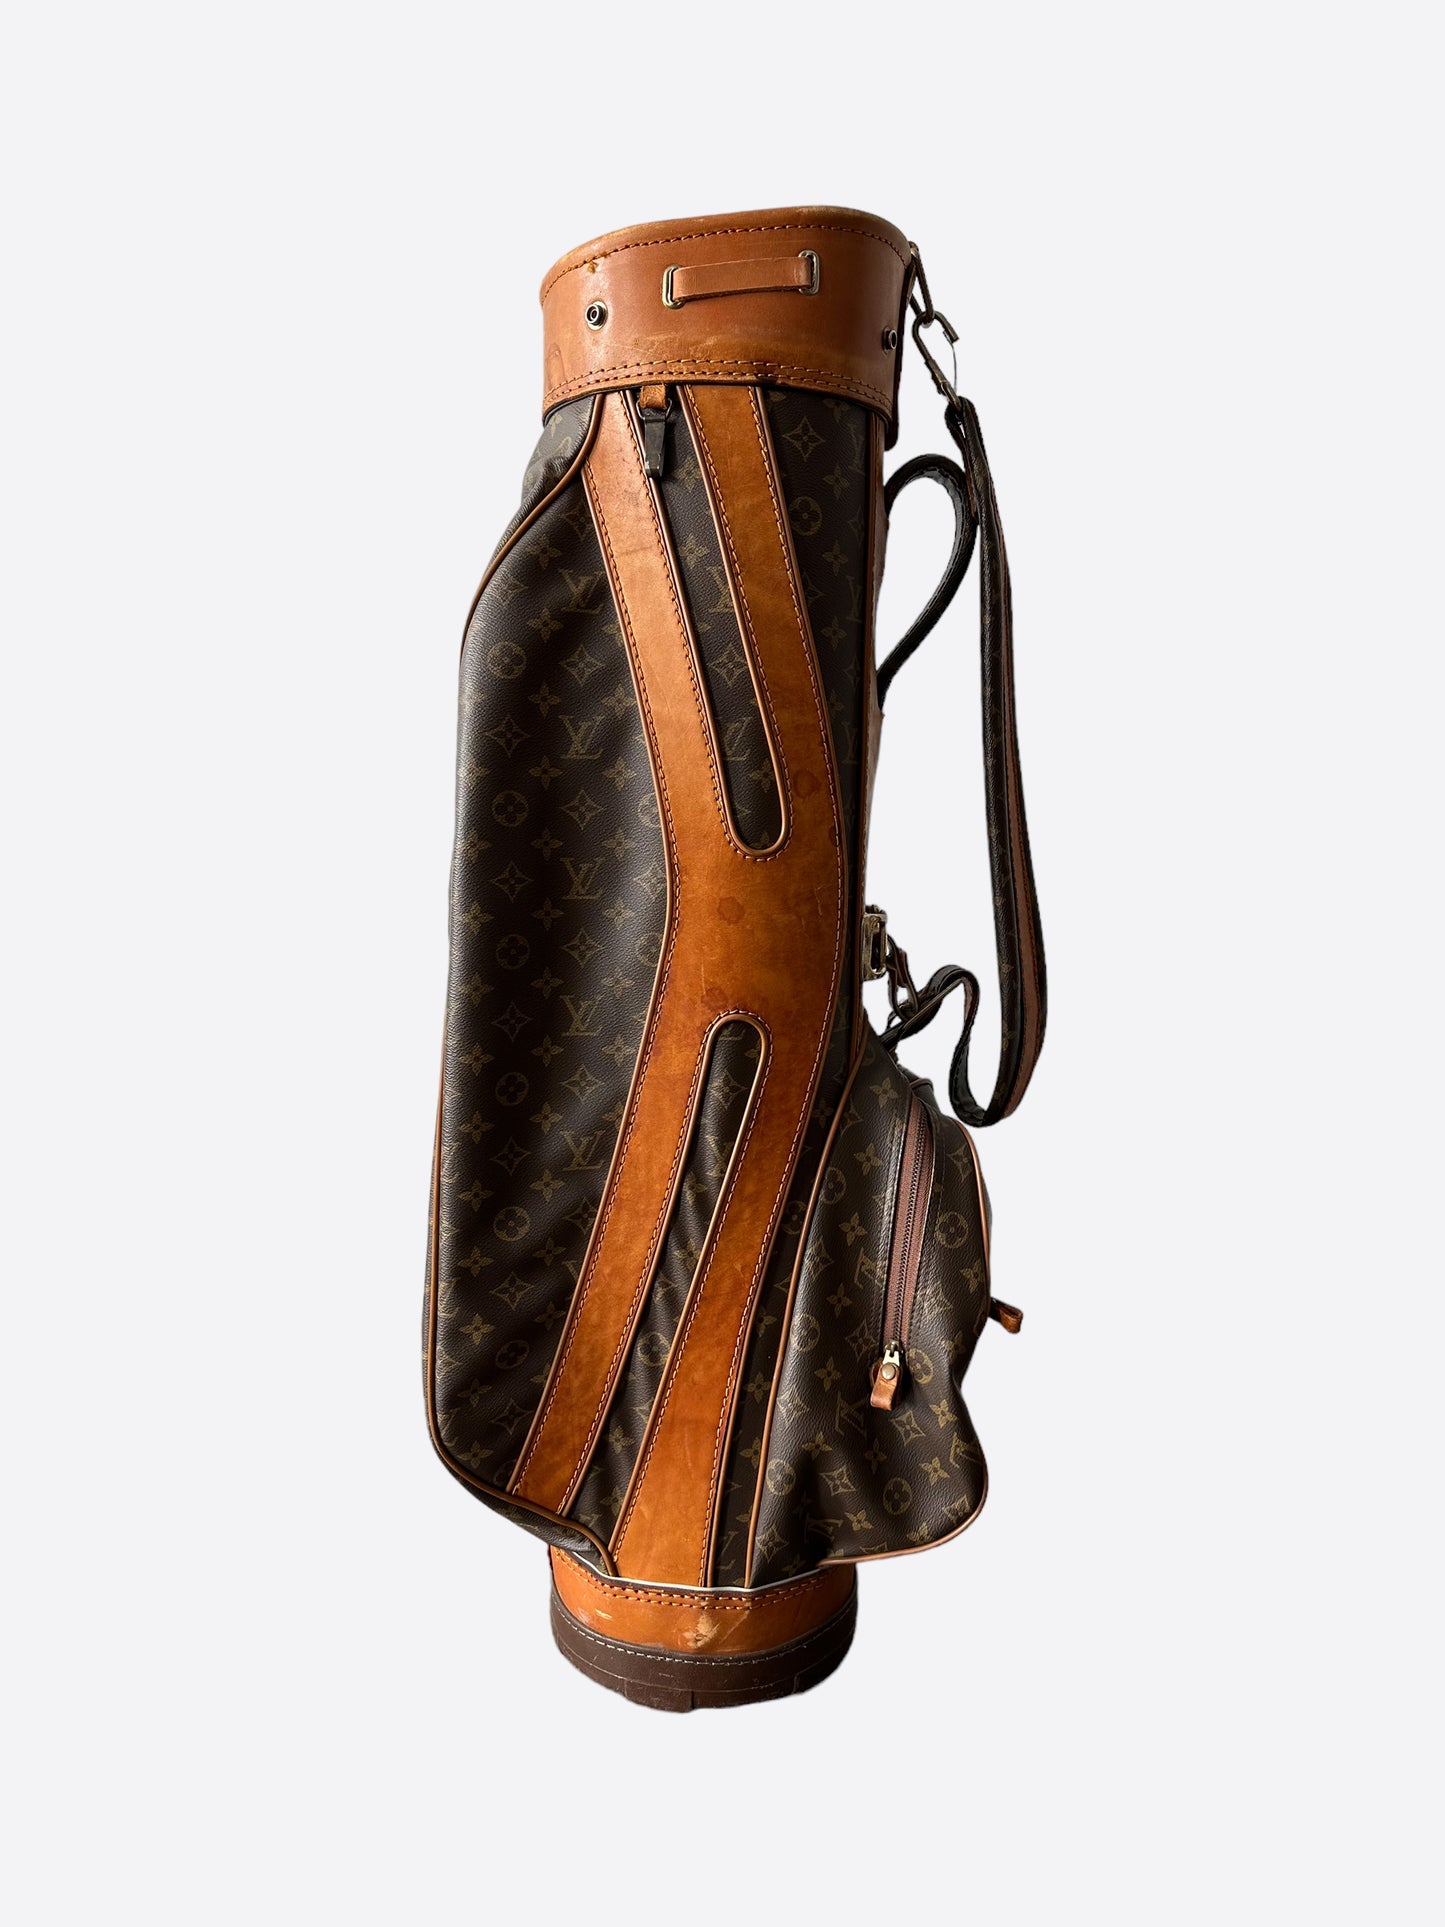 Sold at Auction: Vintage Louis Vuitton Monogram Canvas Golf Bag